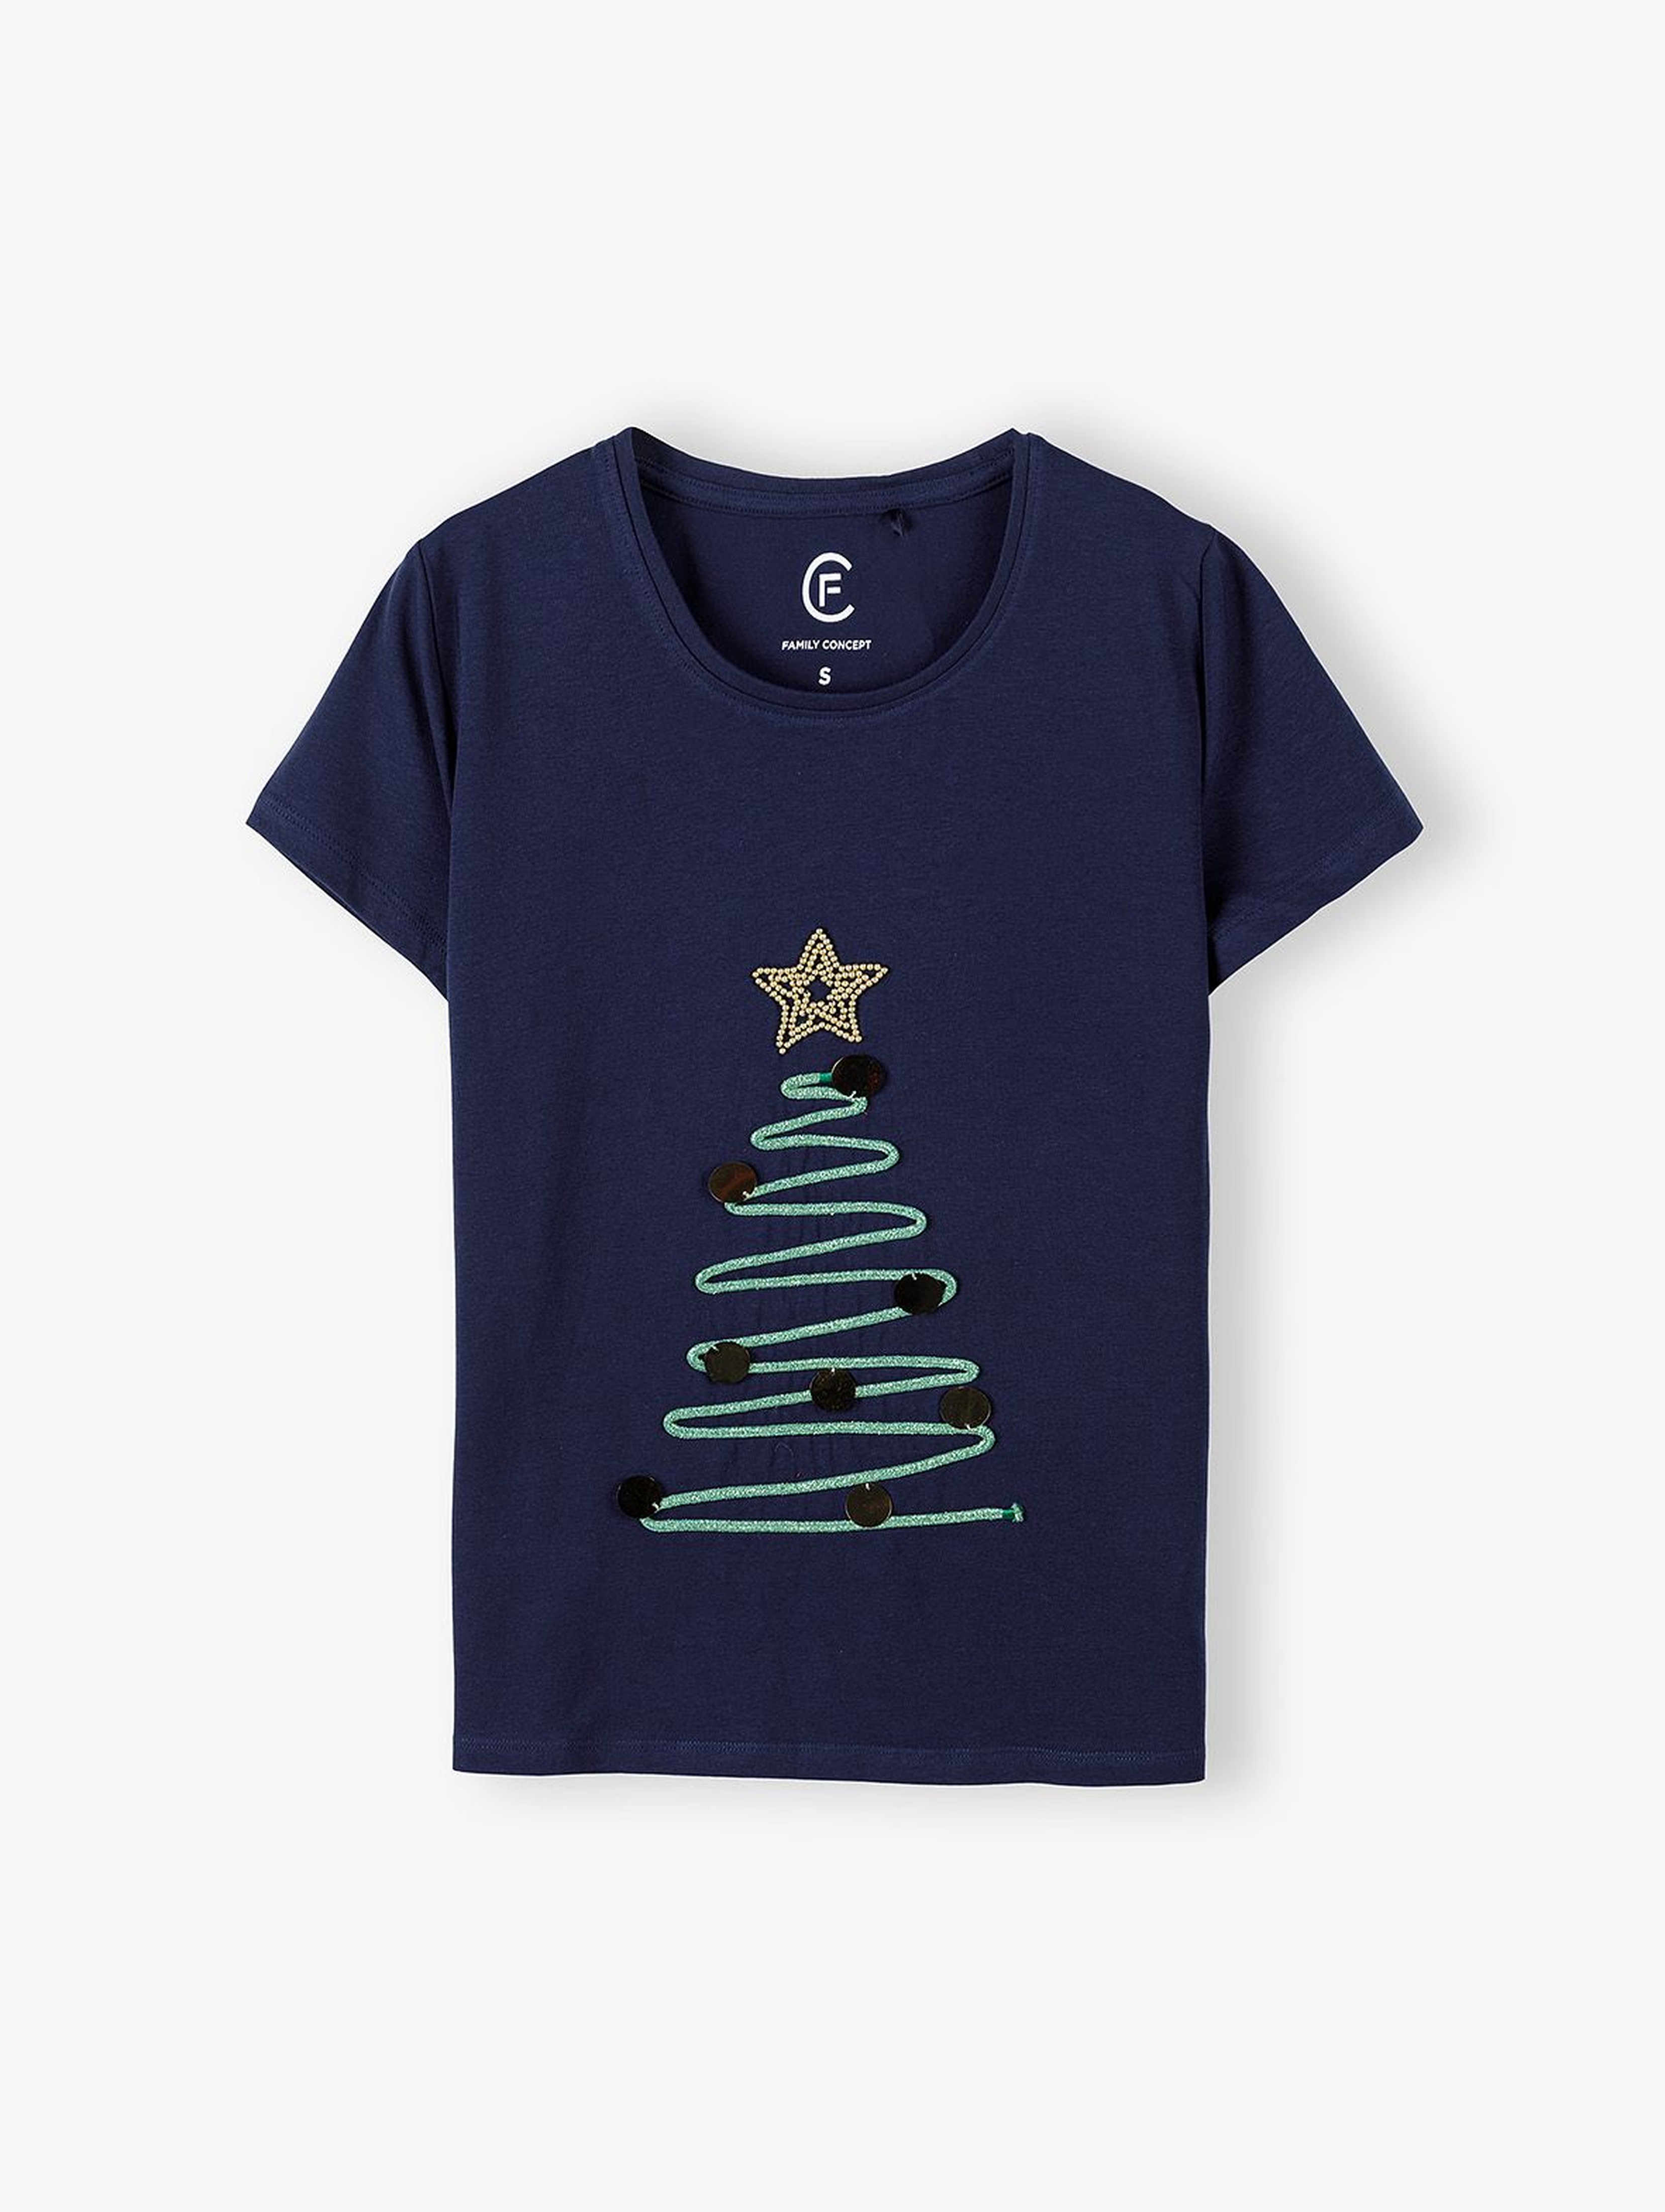 Granatowy świąteczny t-shirt damski z choinką